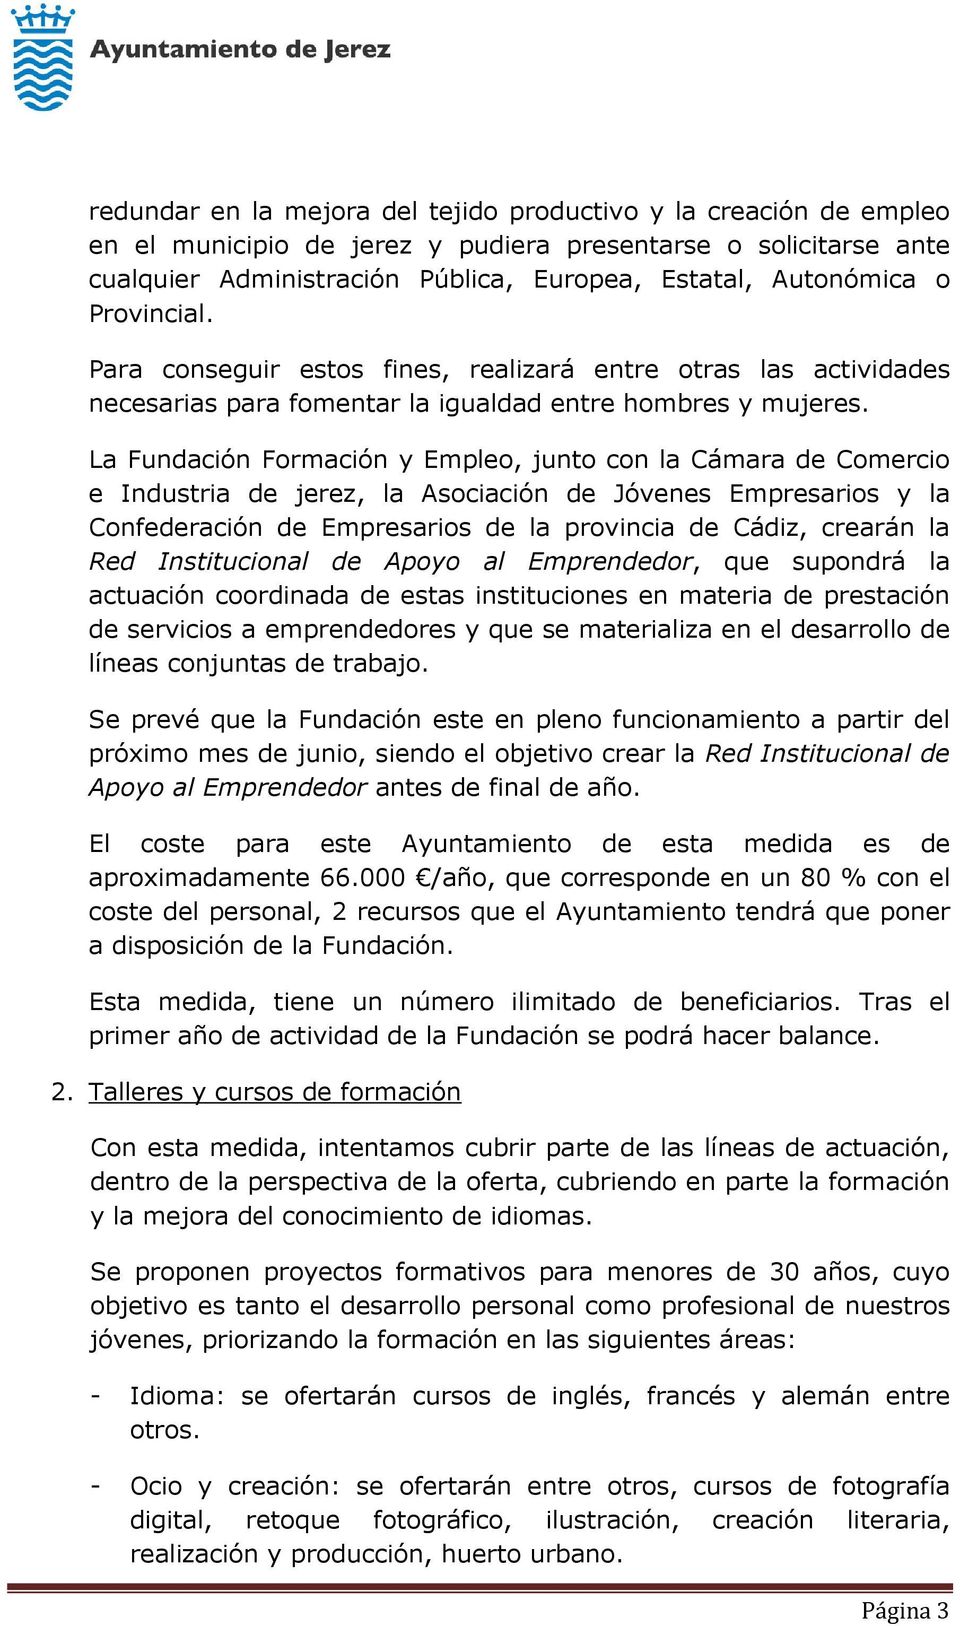 La Fundación Formación y Empleo, junto con la Cámara de Comercio e Industria de jerez, la Asociación de Jóvenes Empresarios y la Confederación de Empresarios de la provincia de Cádiz, crearán la Red